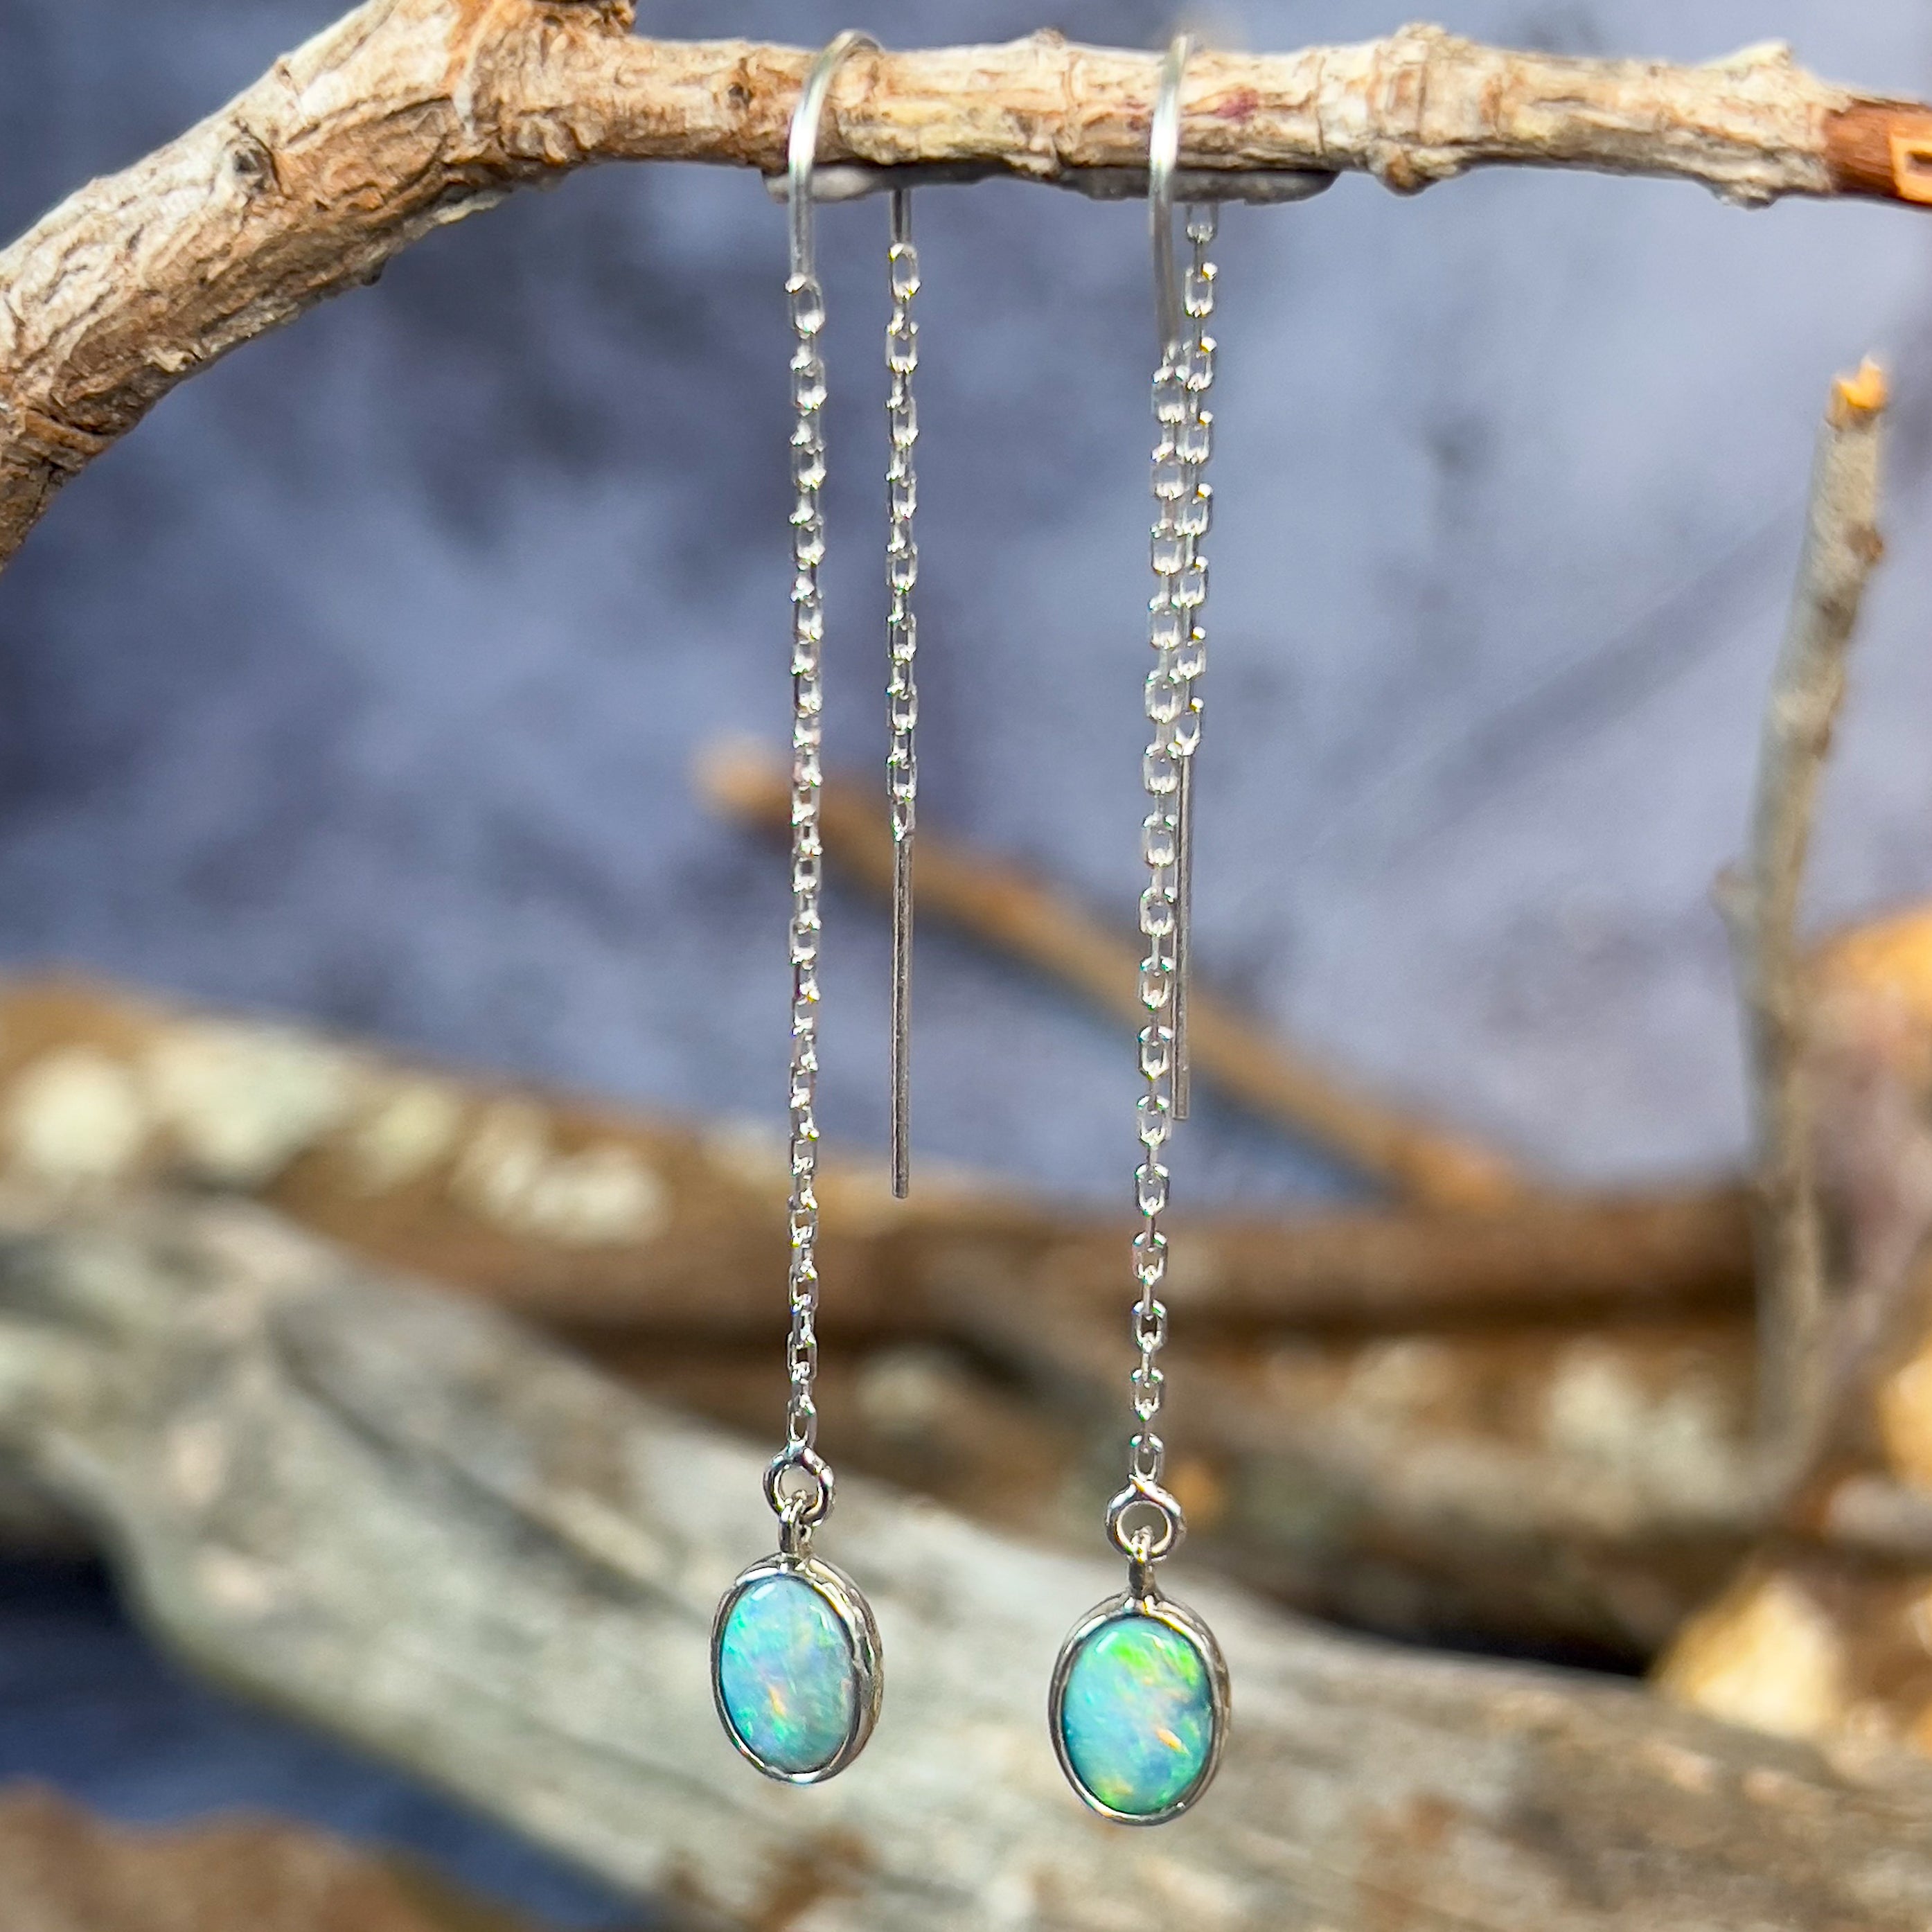 Sterling Silver thread through Opal dangling earrings - Masterpiece Jewellery Opal & Gems Sydney Australia | Online Shop